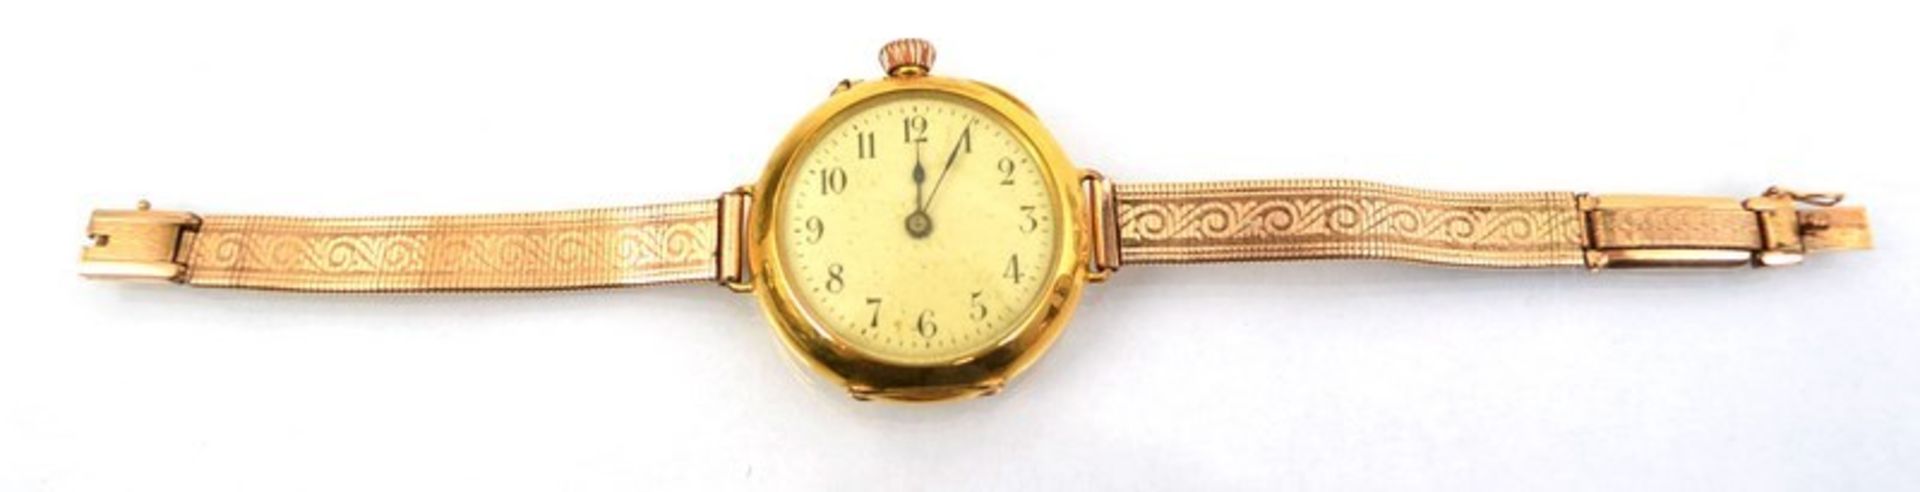 Damentaschenuhr umgebaut zur Armbanduhr, 14 kt. Gelbgold, mit Monogramm GS, Emailzifferblatt, um